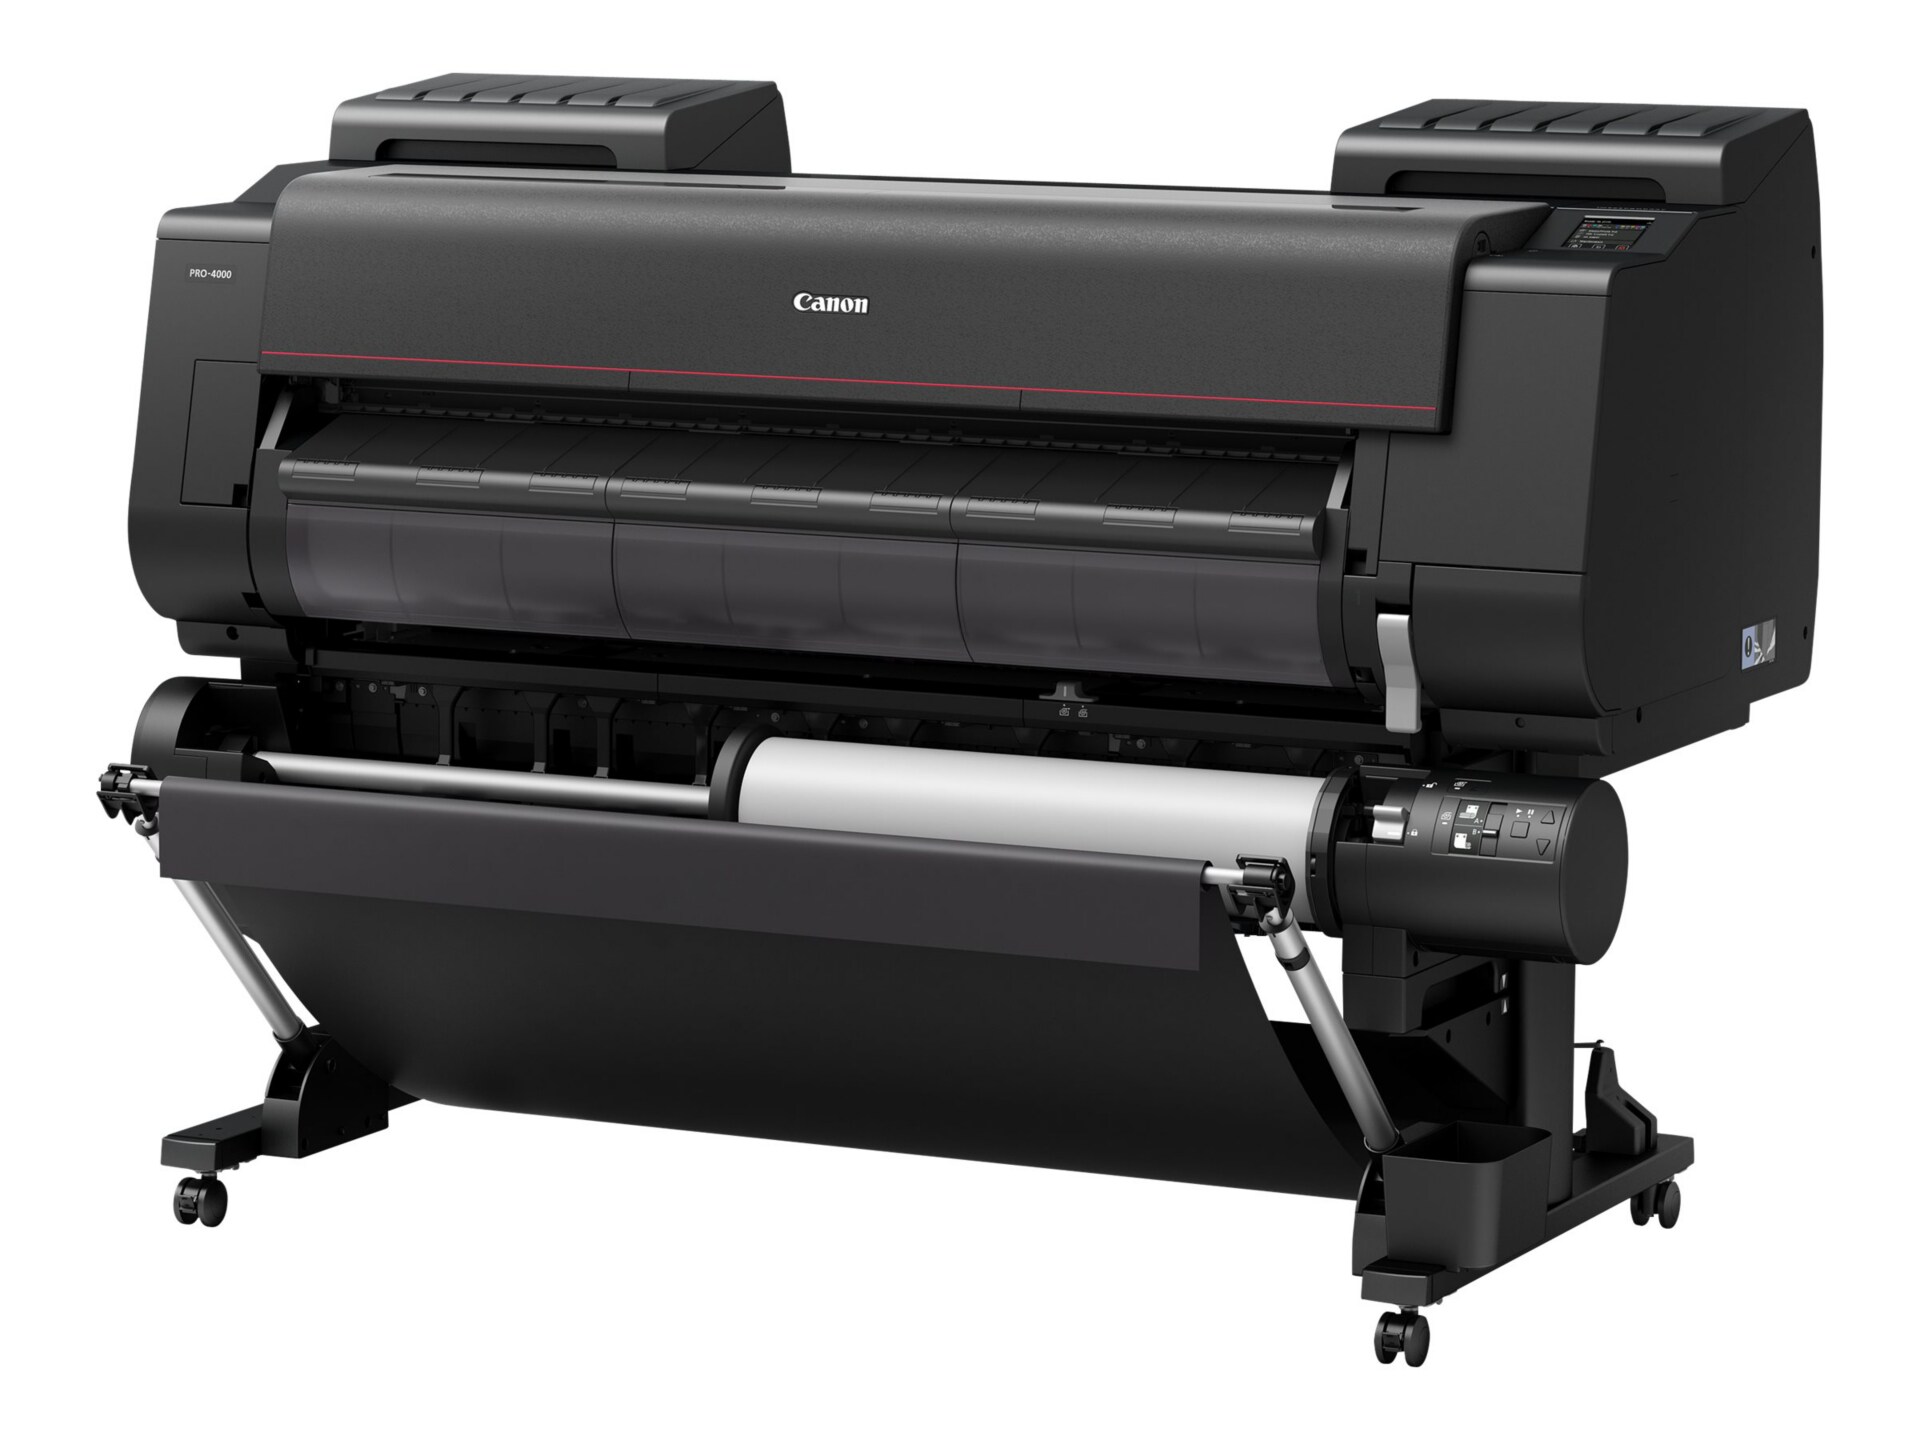 Canon imagePROGRAF PRO-4000 - large-format printer - color - ink-jet